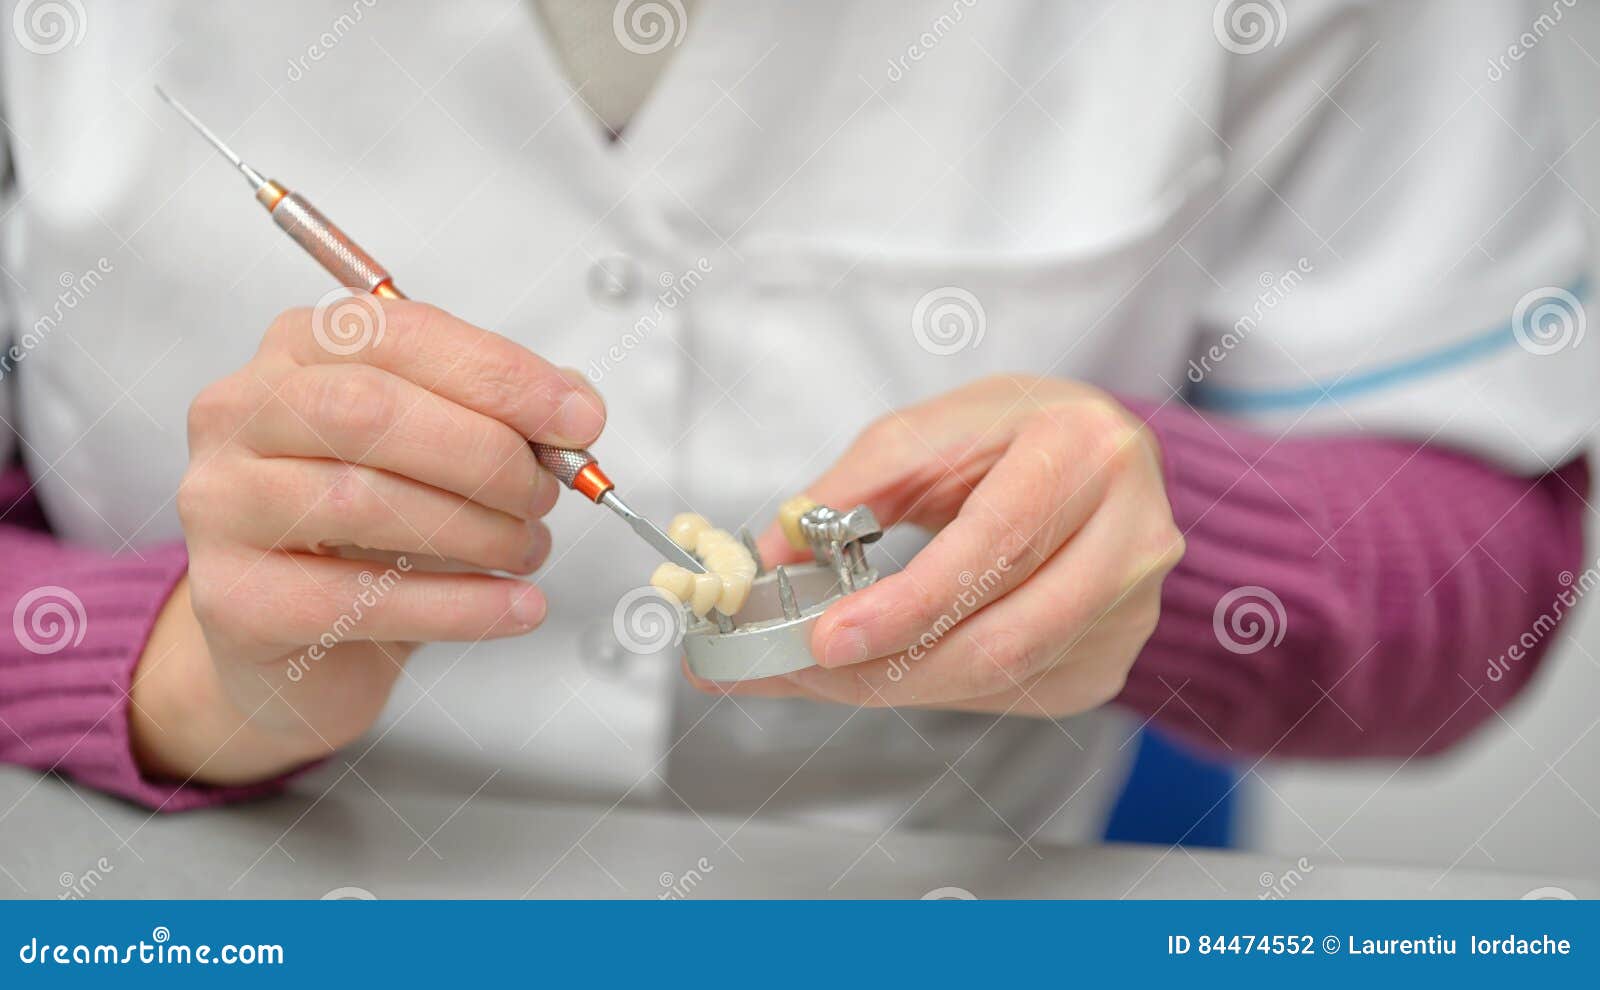 dental technician working